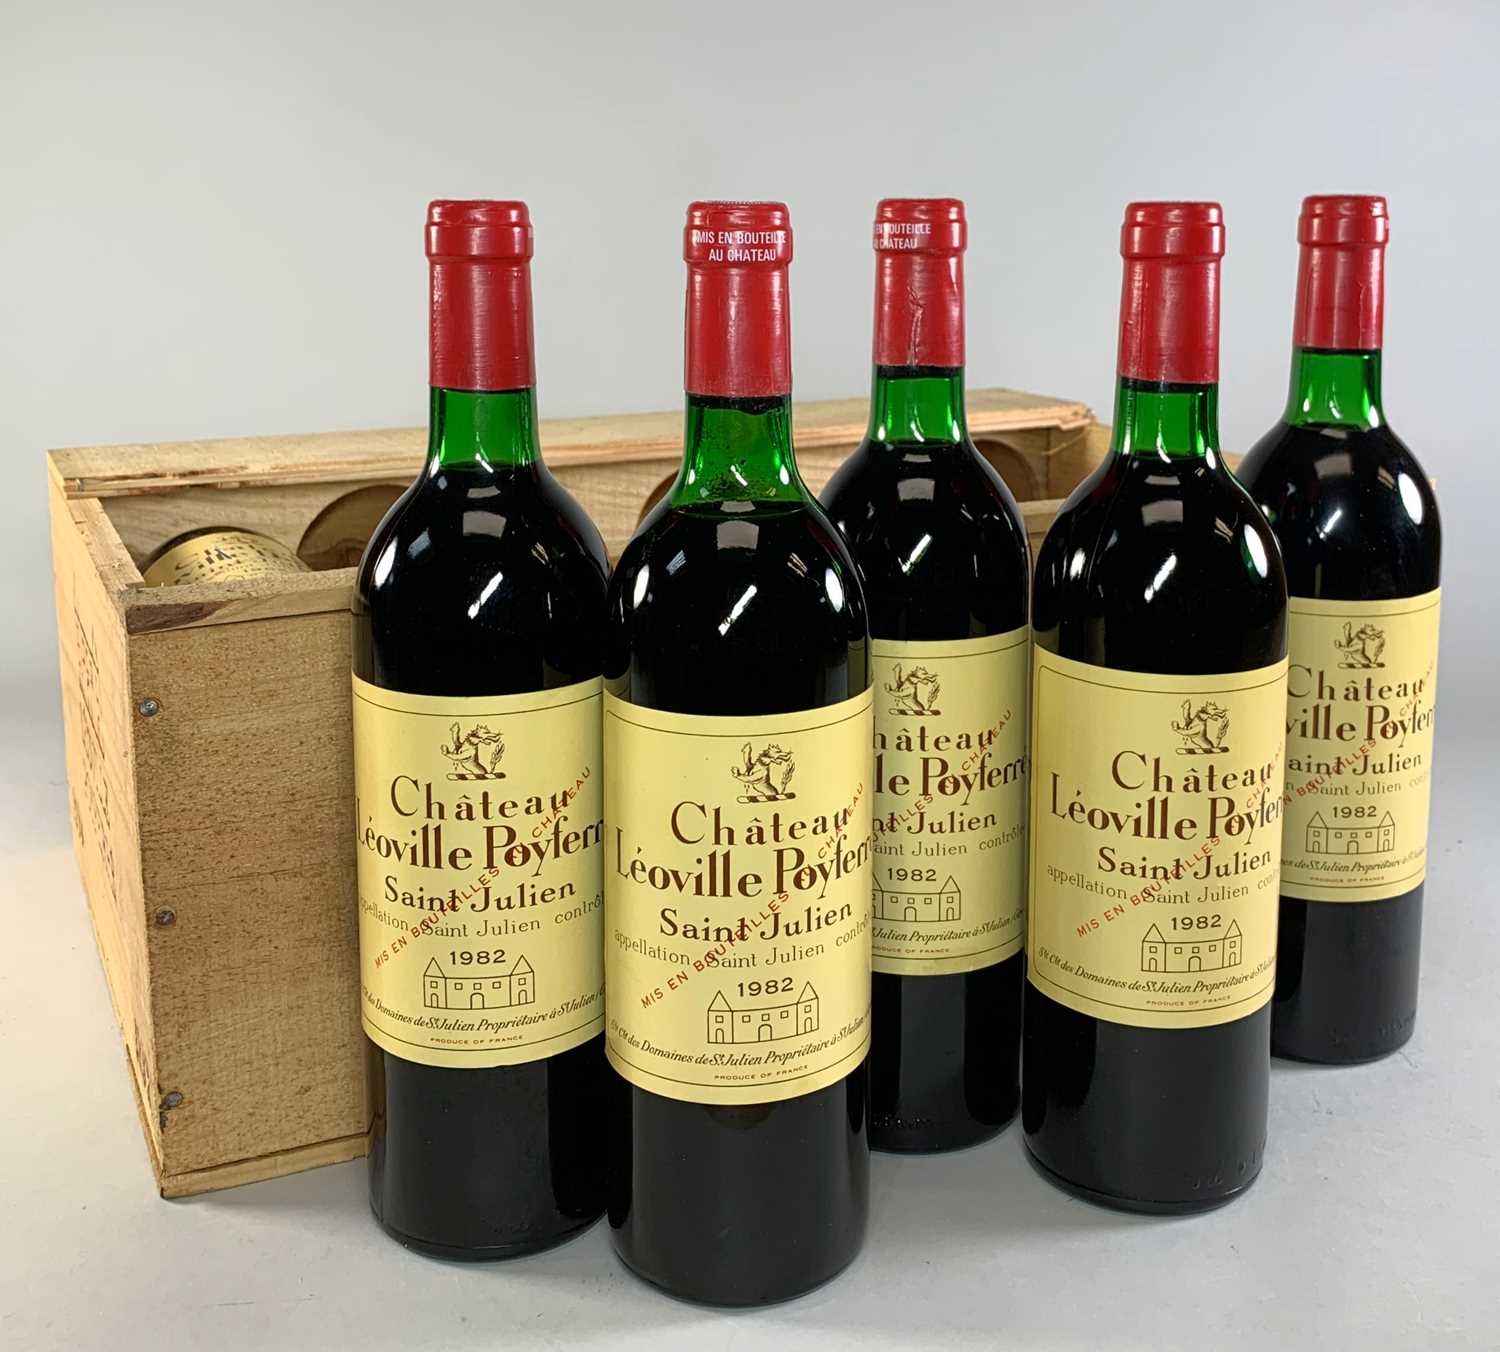 1982 CHATEAU LÉOVILLE POYFERRÉ, 2ème Cru Classé Saint-Julien, 12 x 75cl bottles, OWC (opened)